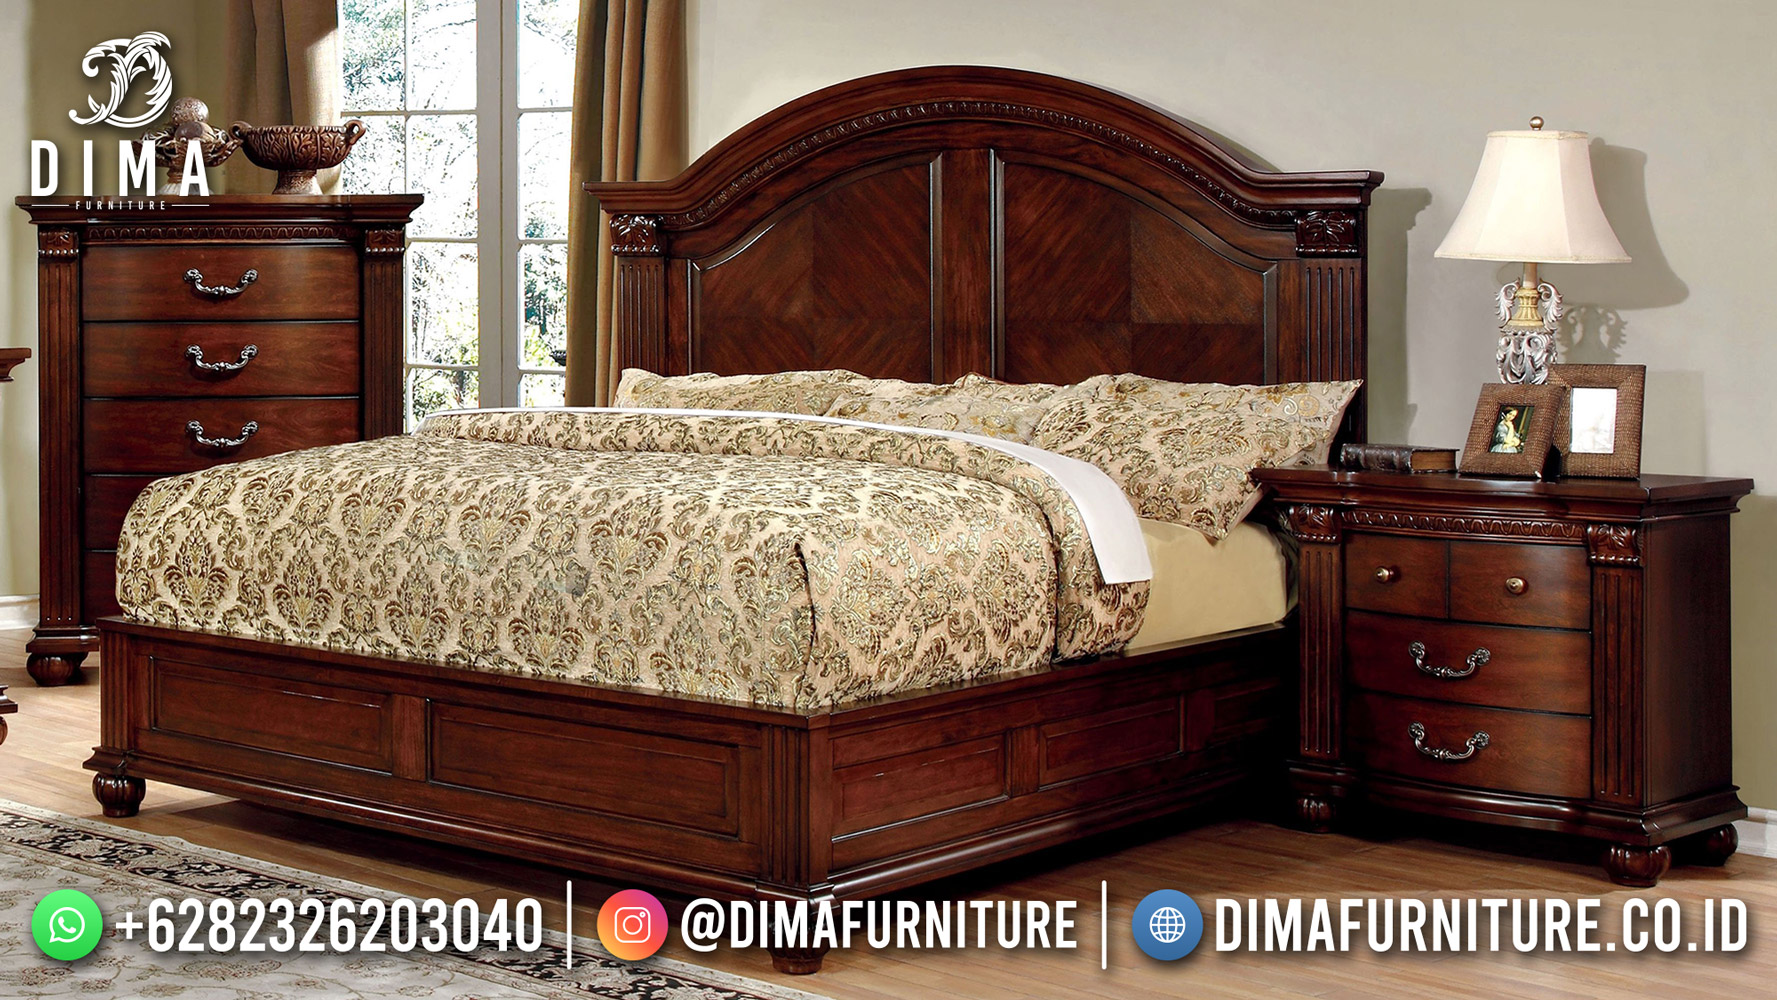 Jual Tempat Tidur Minimalis Jati Glossy Alexa Furniture Jepara DF-2060